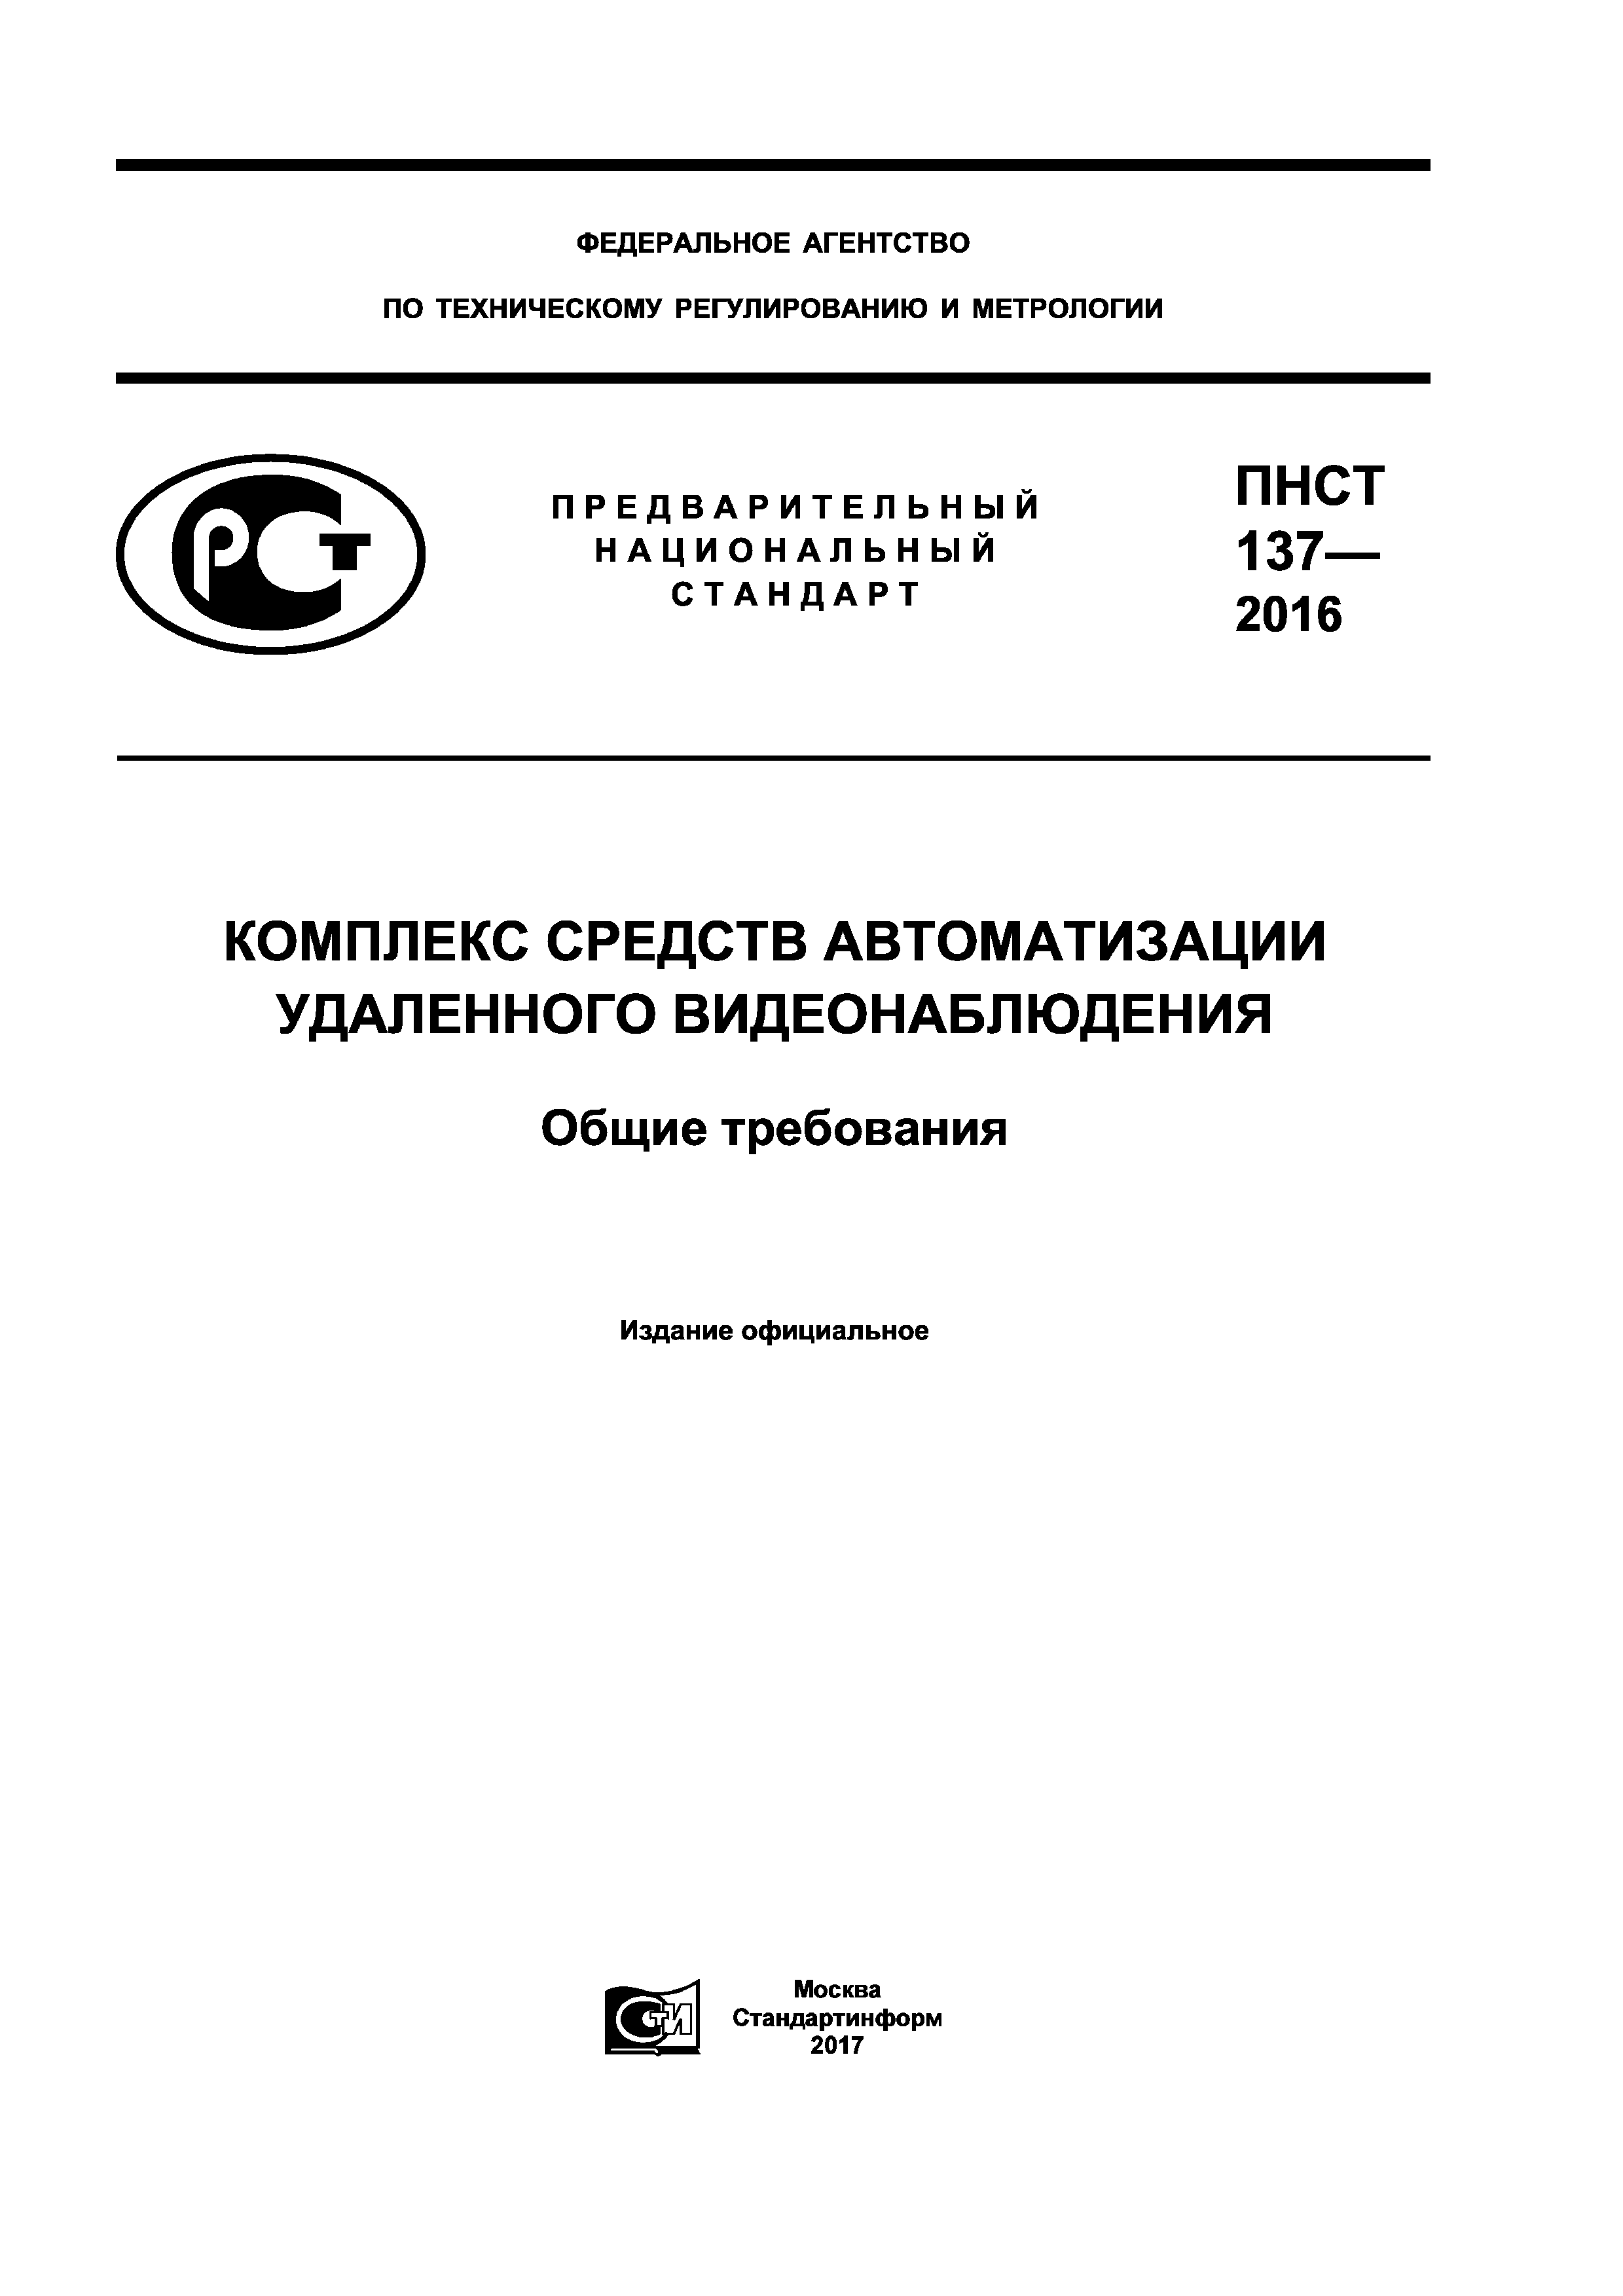 ПНСТ 137-2016